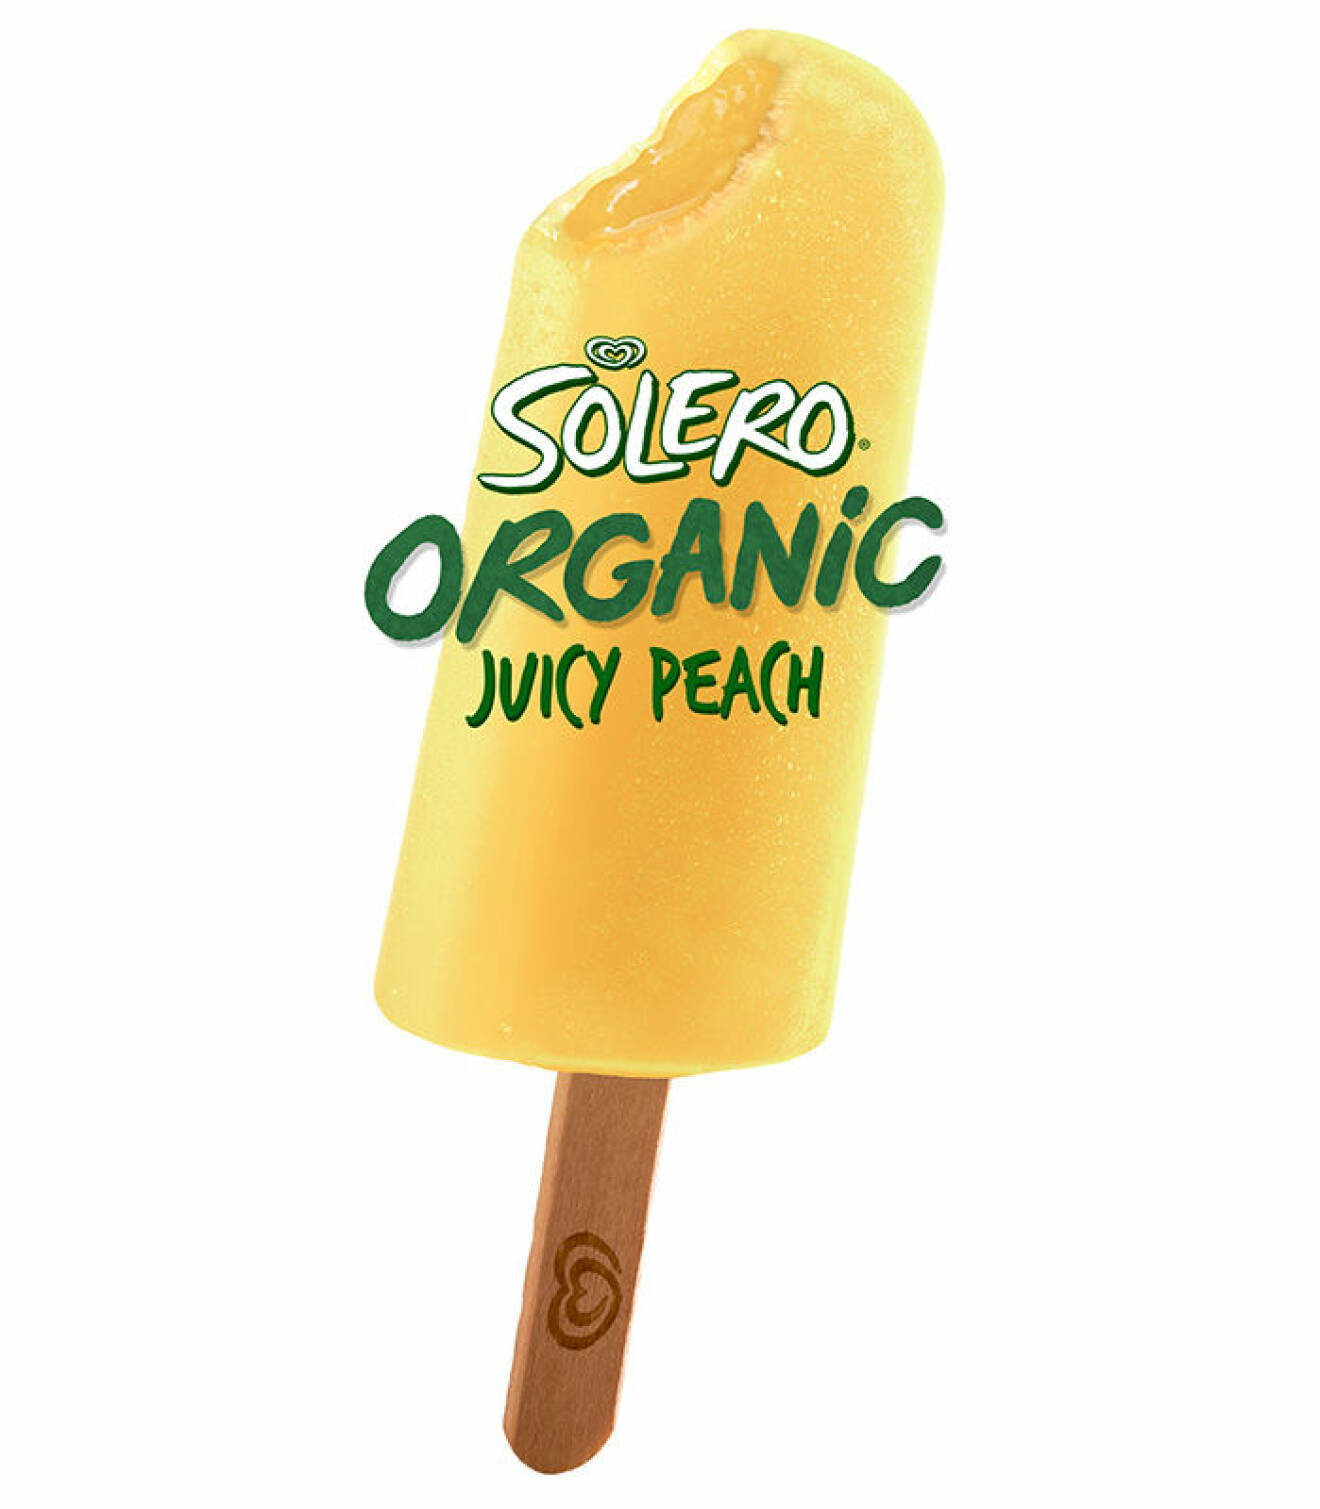 Solero Organic Juicy Peach